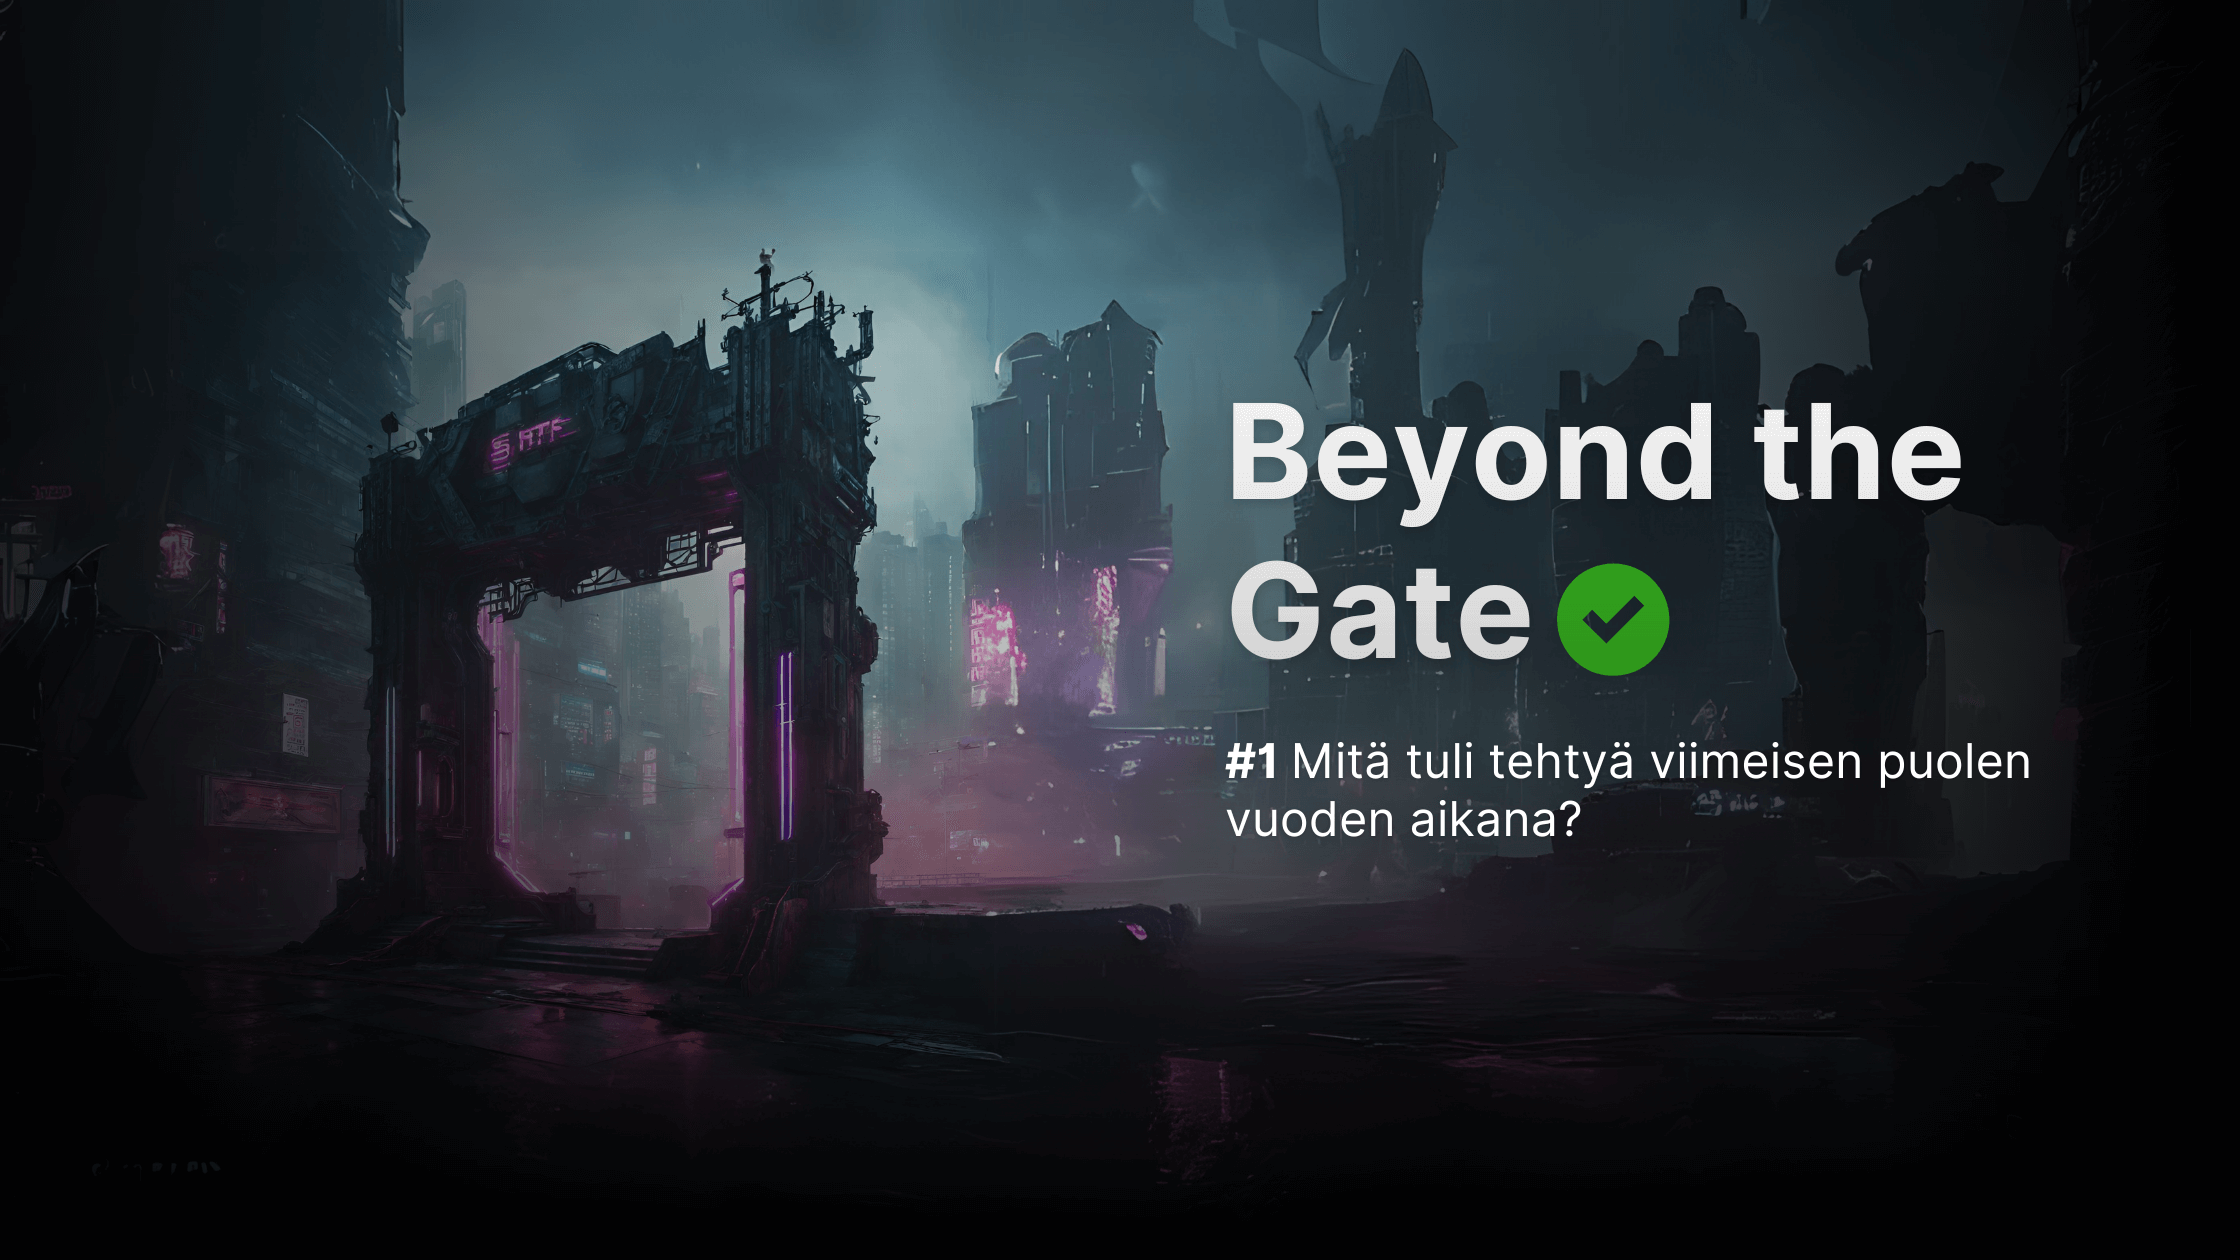 Beyond the Gate #1 Mitä tuli tehtyä viimeisen puolen vuoden aikana?